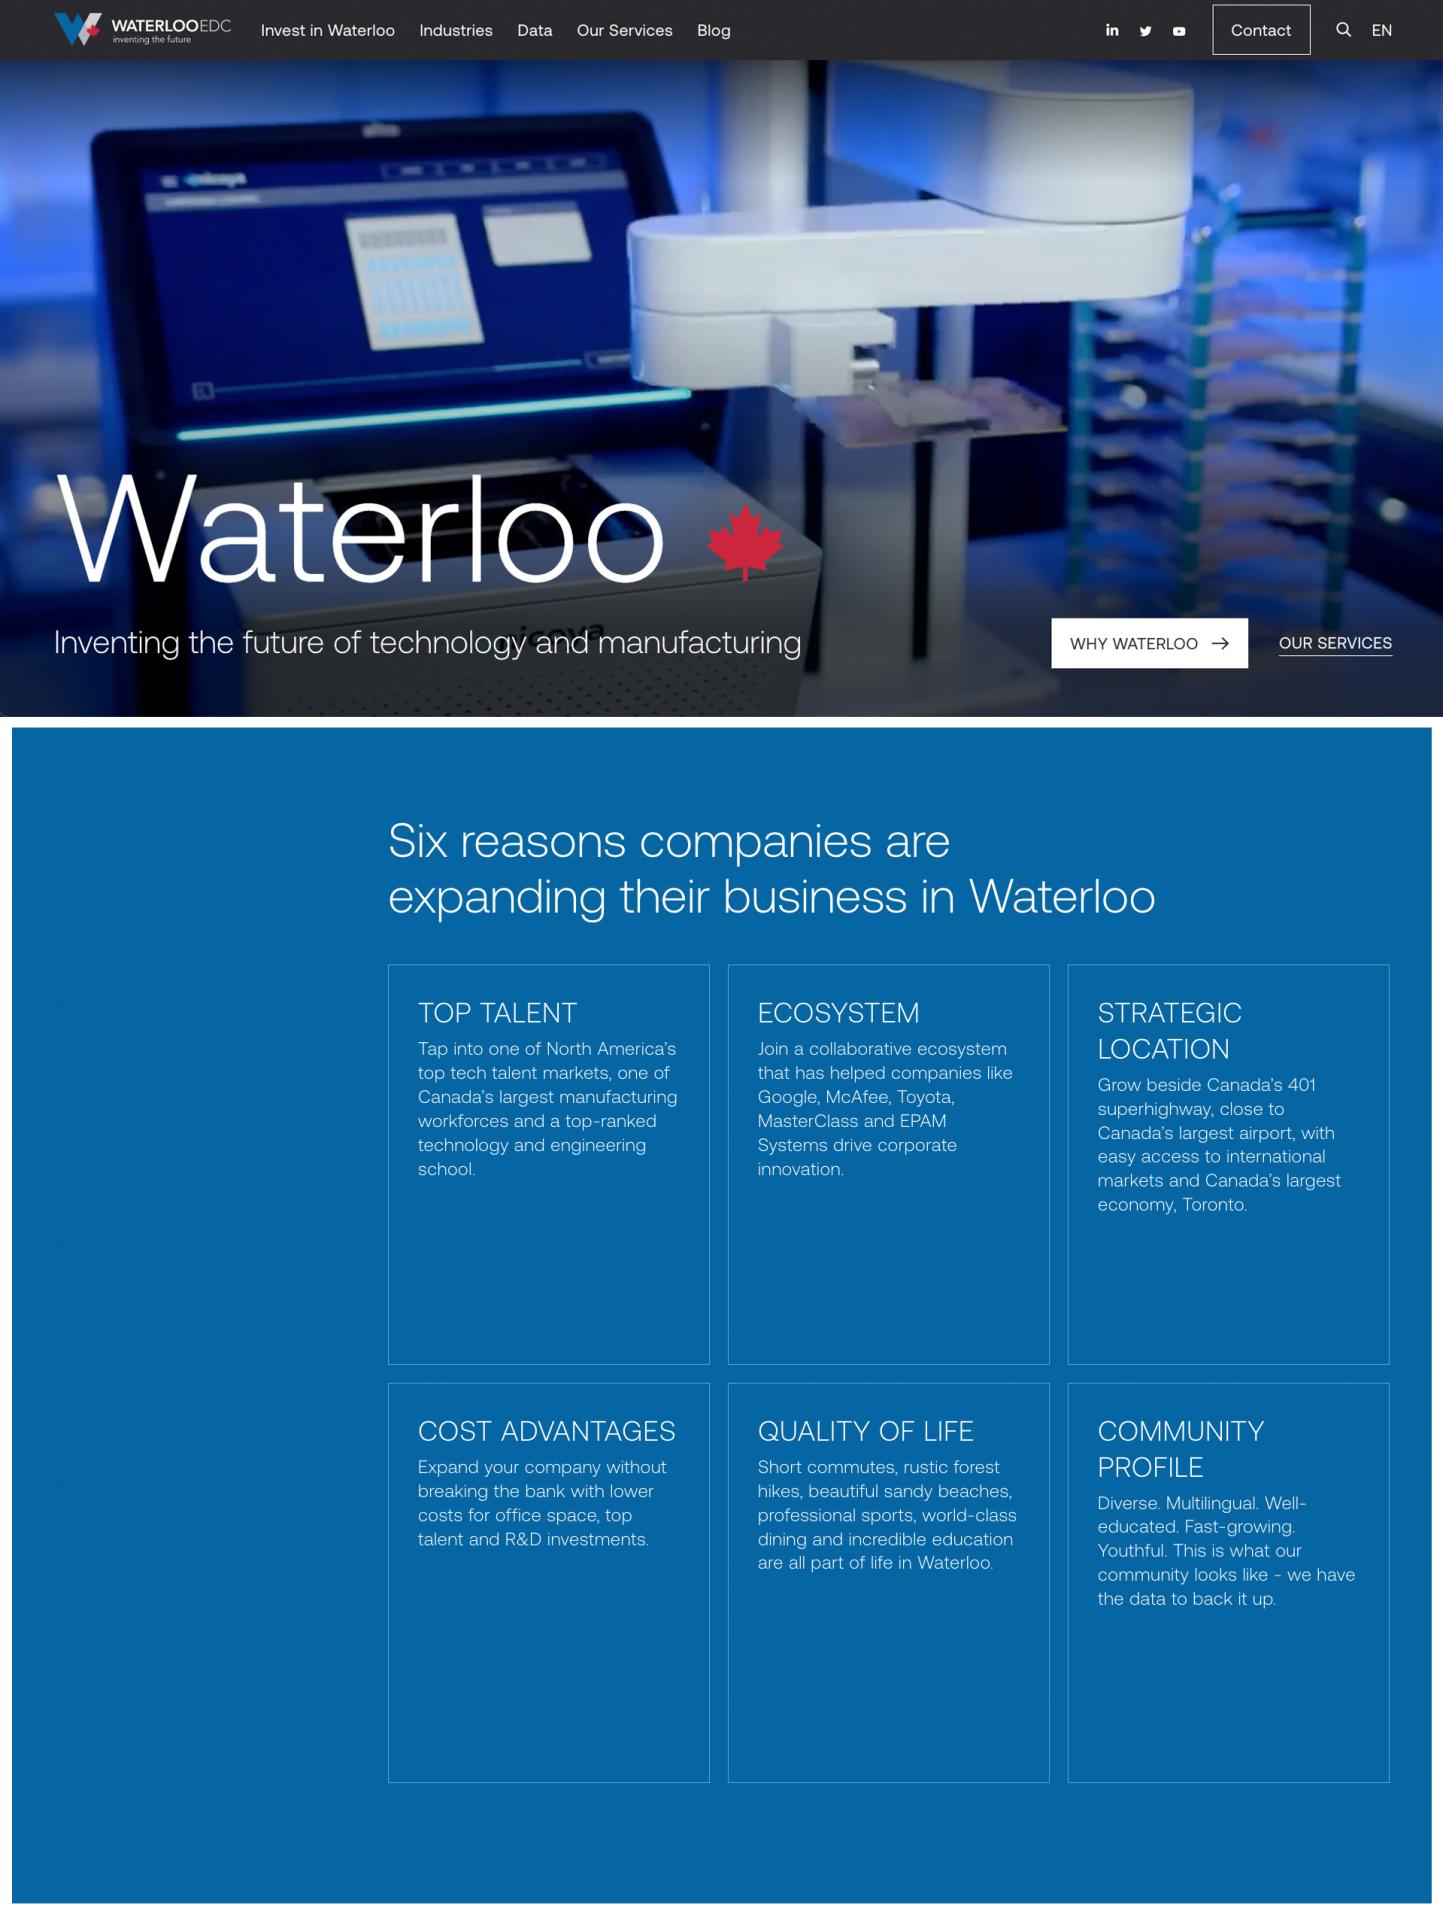 Vega Digital Awards Winner - Waterloo EDC Website Redesign, Waterloo EDC